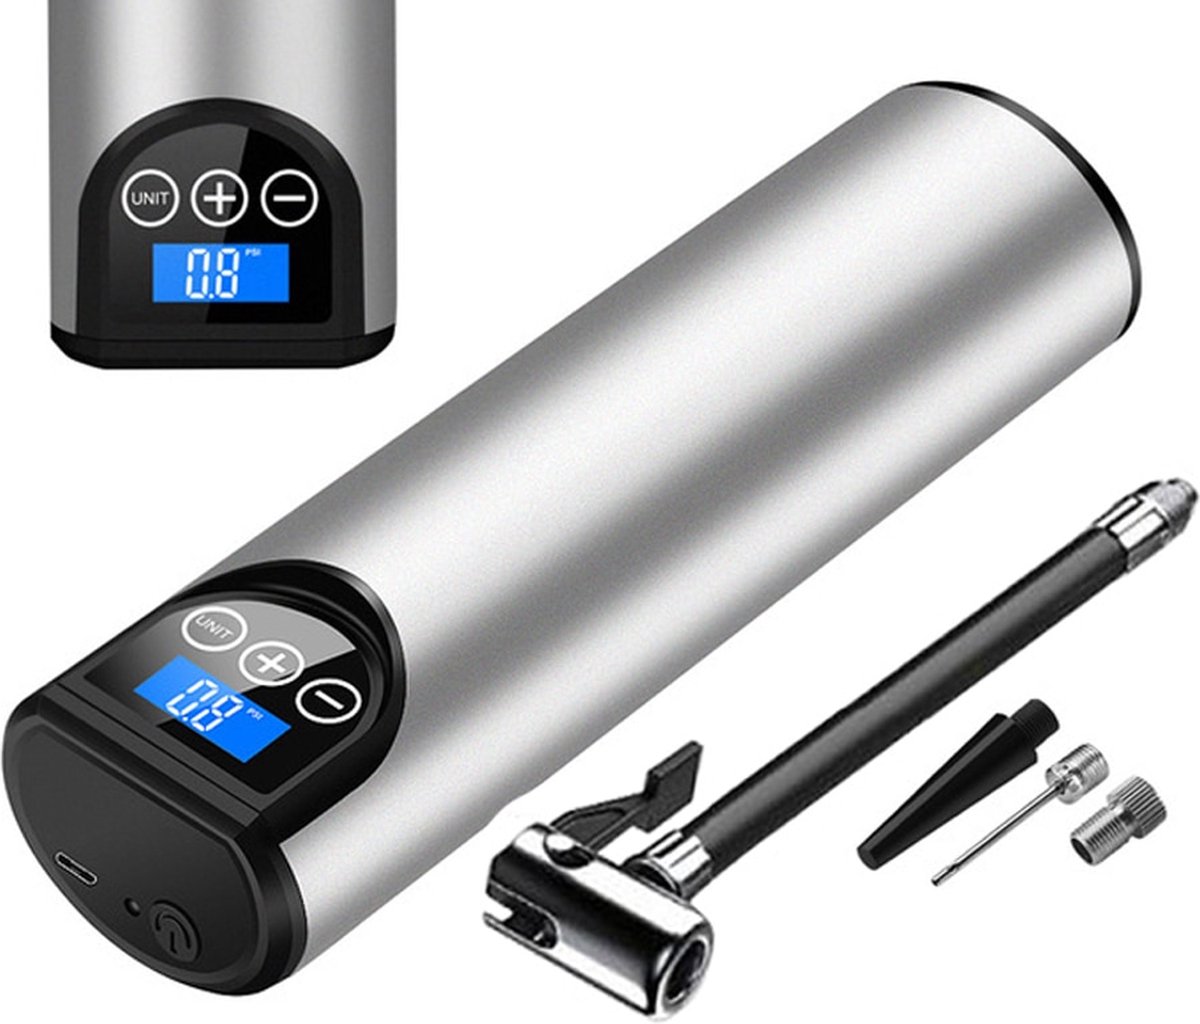 Compressor - Bandenpomp - Fietspomp - Luchtdrukpomp - Bandenpomp - Auto - Elektrisch - USB-oplaadbaar - Zilver - Met Oplaadkabel + 3 Opzetstukken